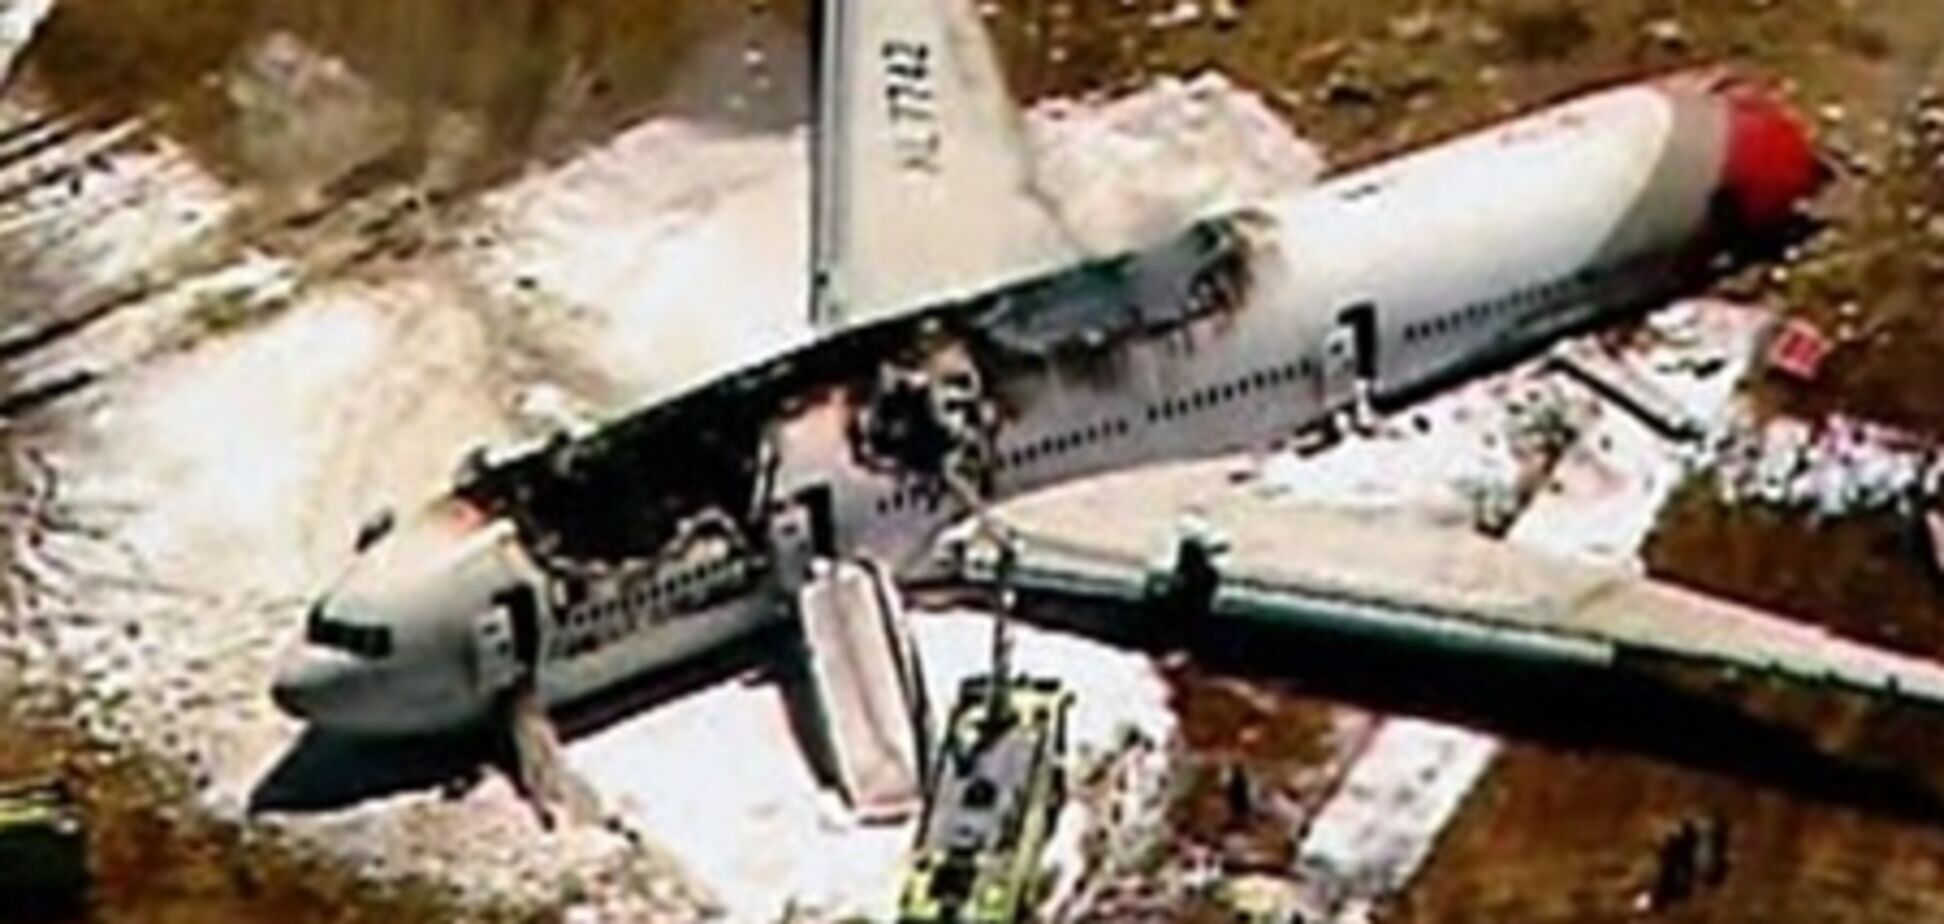 Авария самолета в США: две жертвы, 61 пострадавший - СМИ